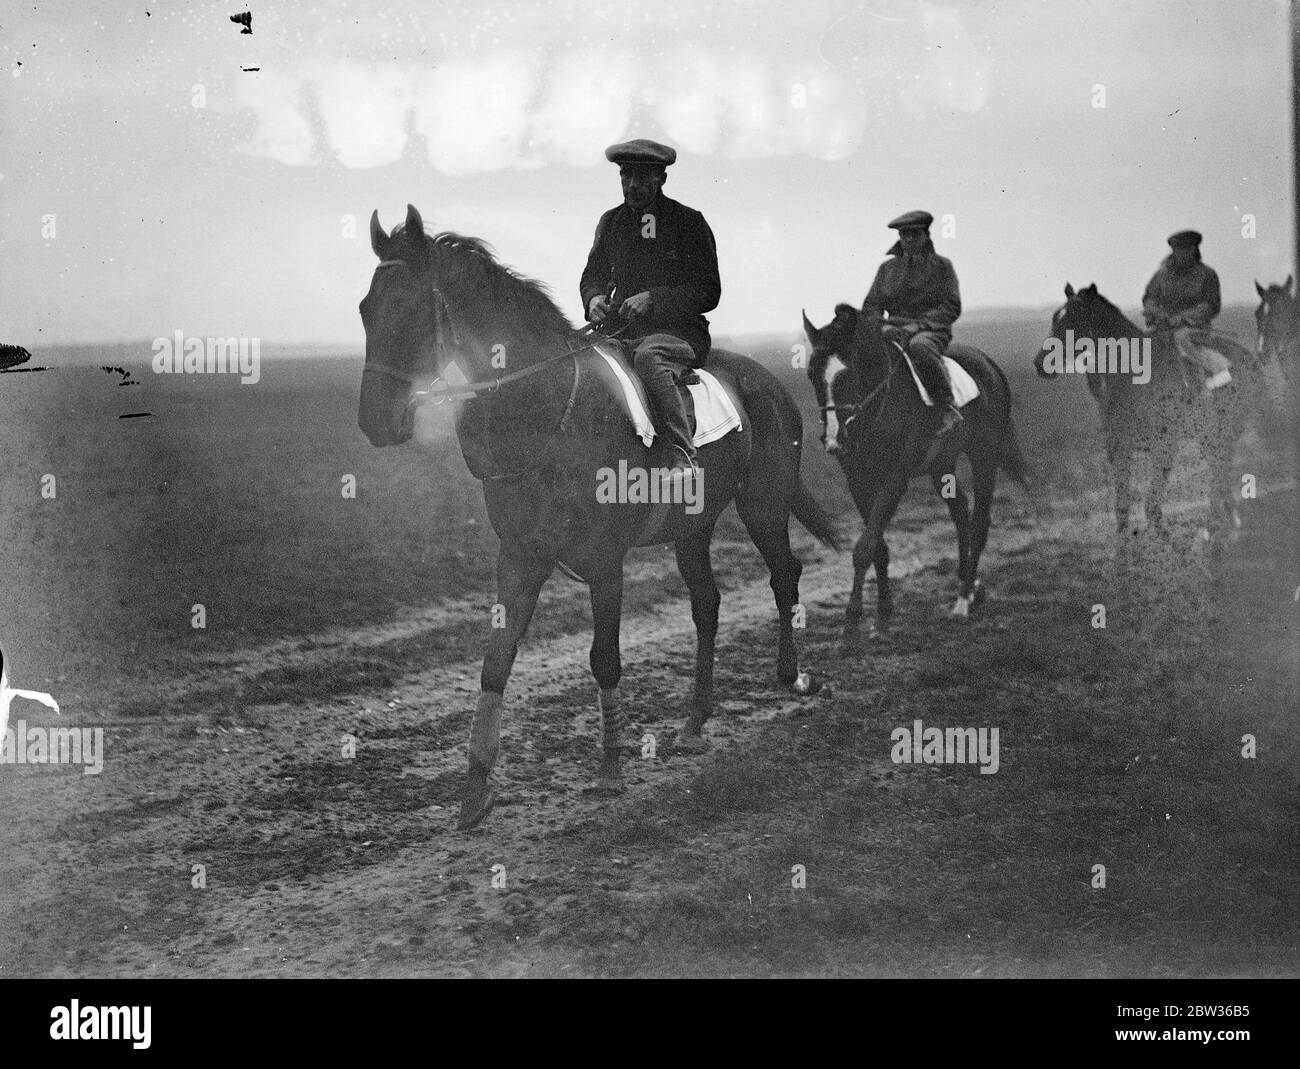 Cavallo da corsa giovane amante che cammina con altri cavalli e cavalieri seguendo in linea giugno 1933 Foto Stock